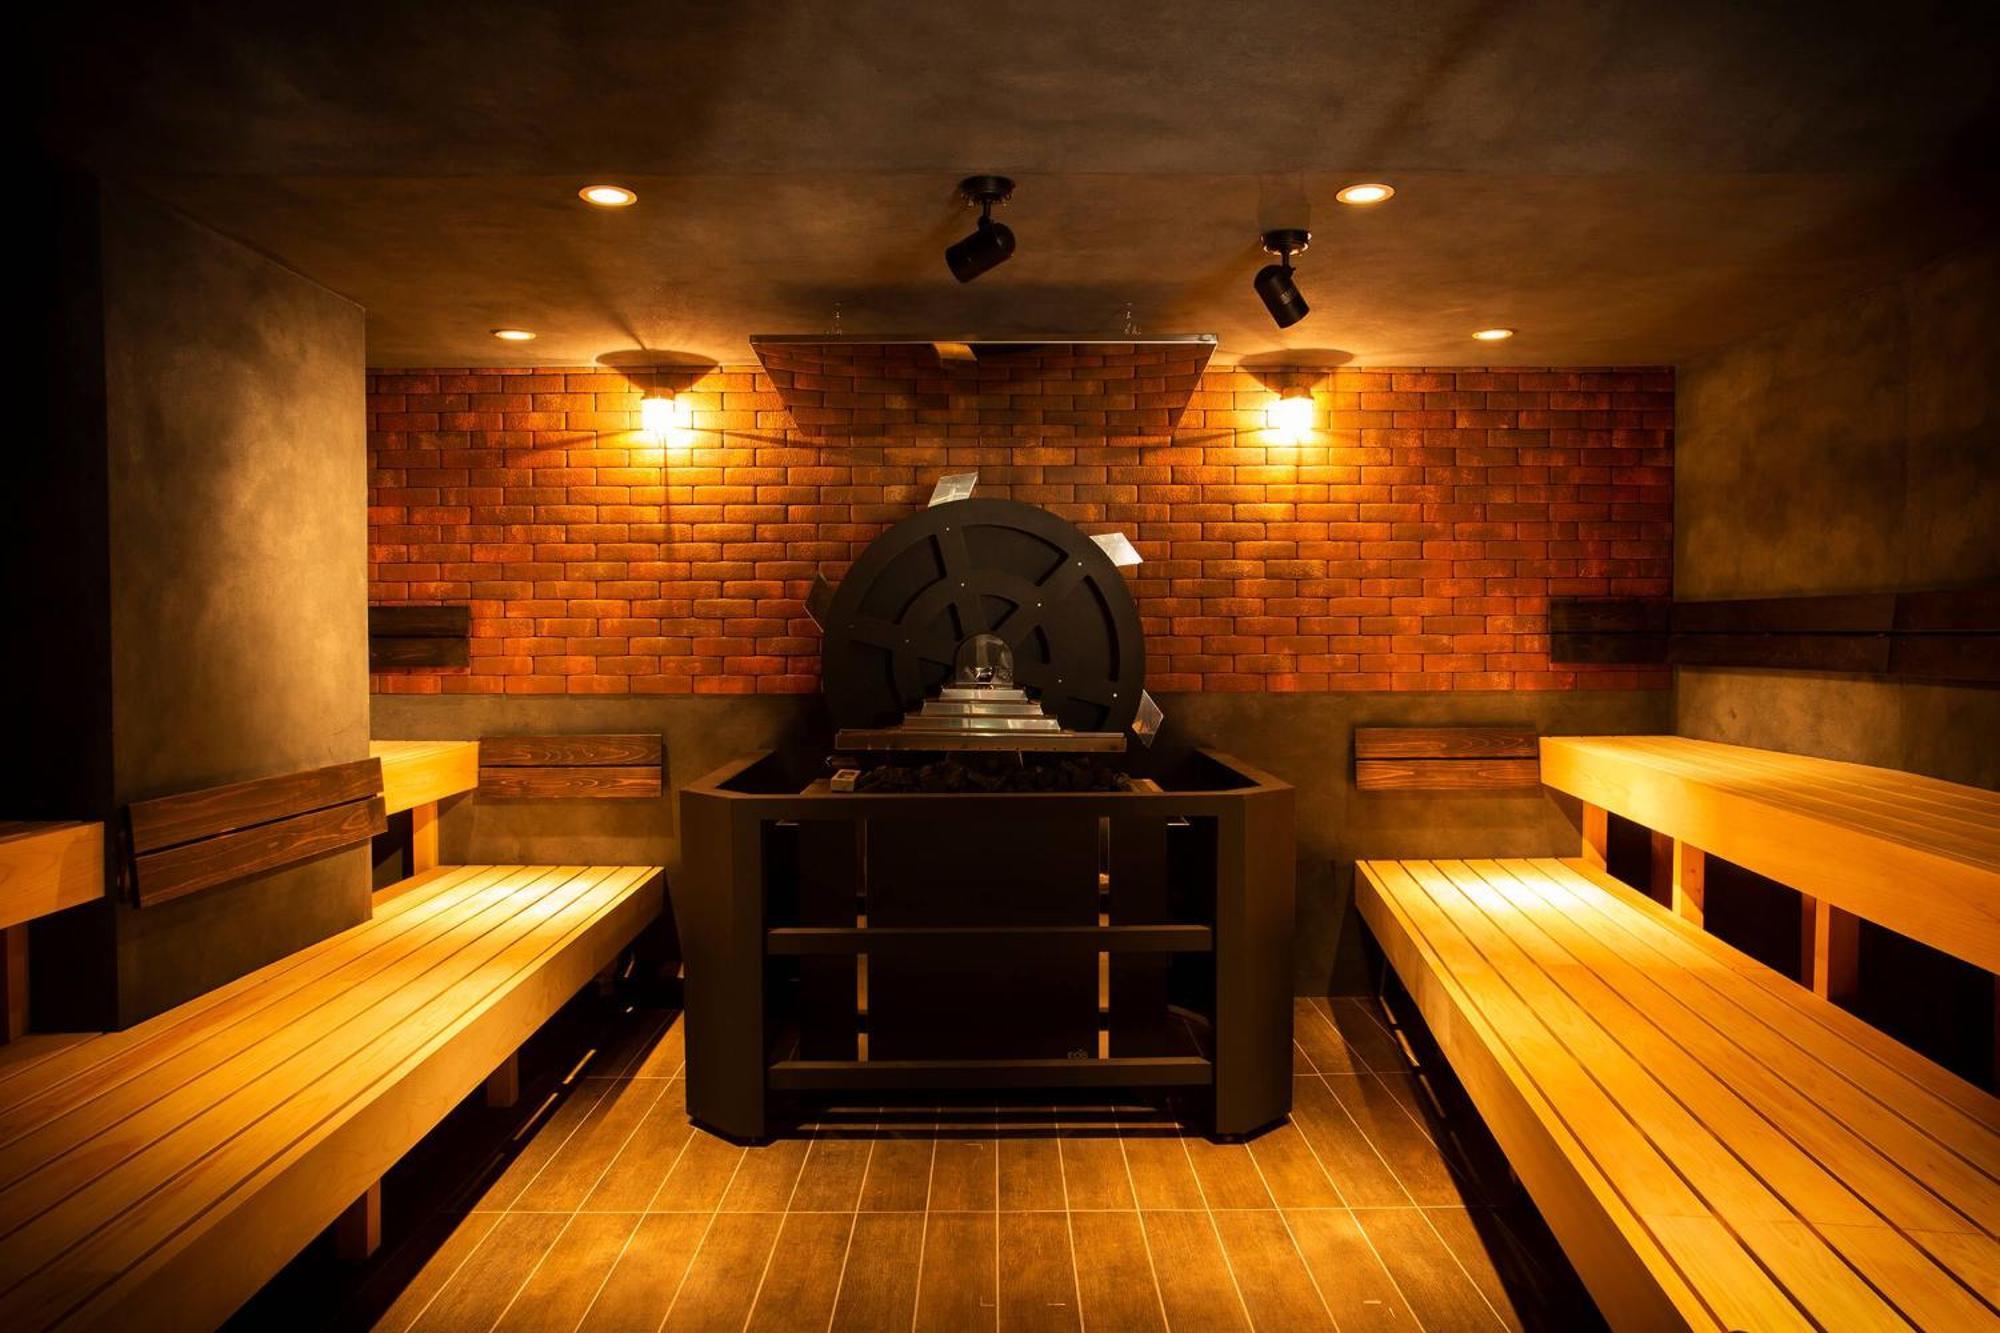 Hare-Tabi Sauna&Inn Yokohama Йокогама Экстерьер фото